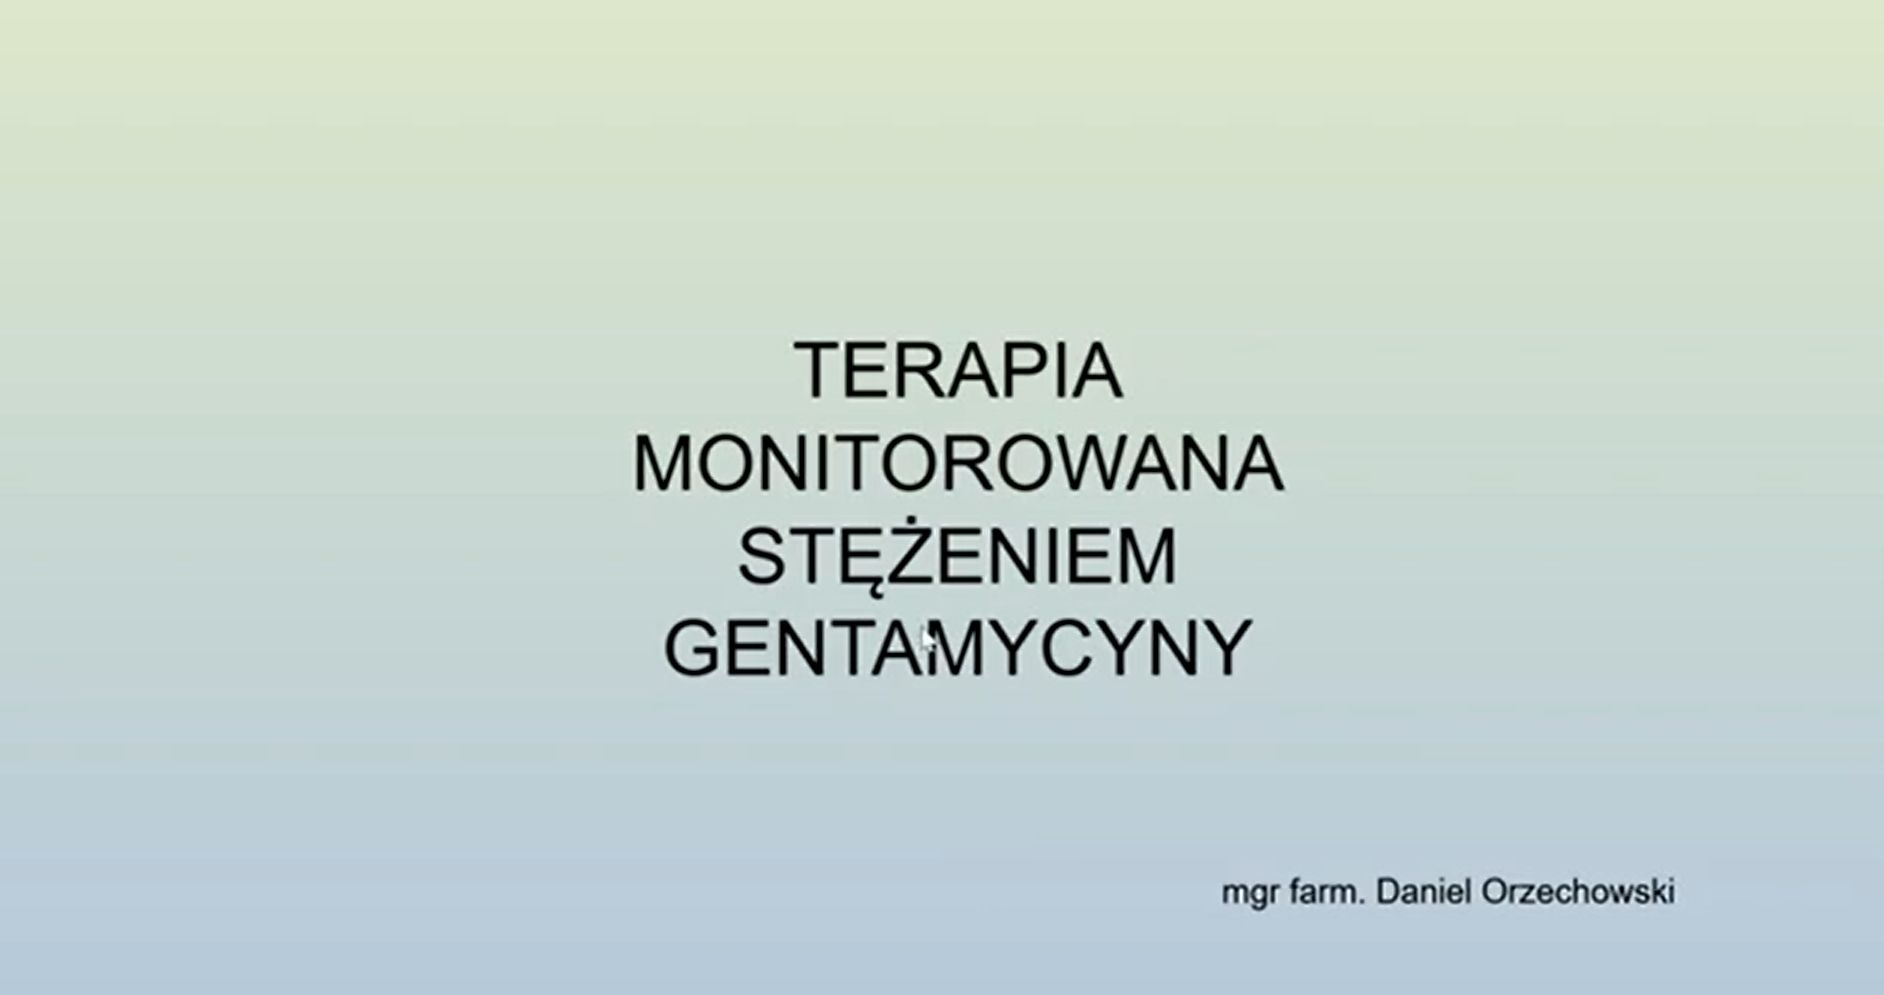 Terapia monitorowana stężeniem gentamycyny